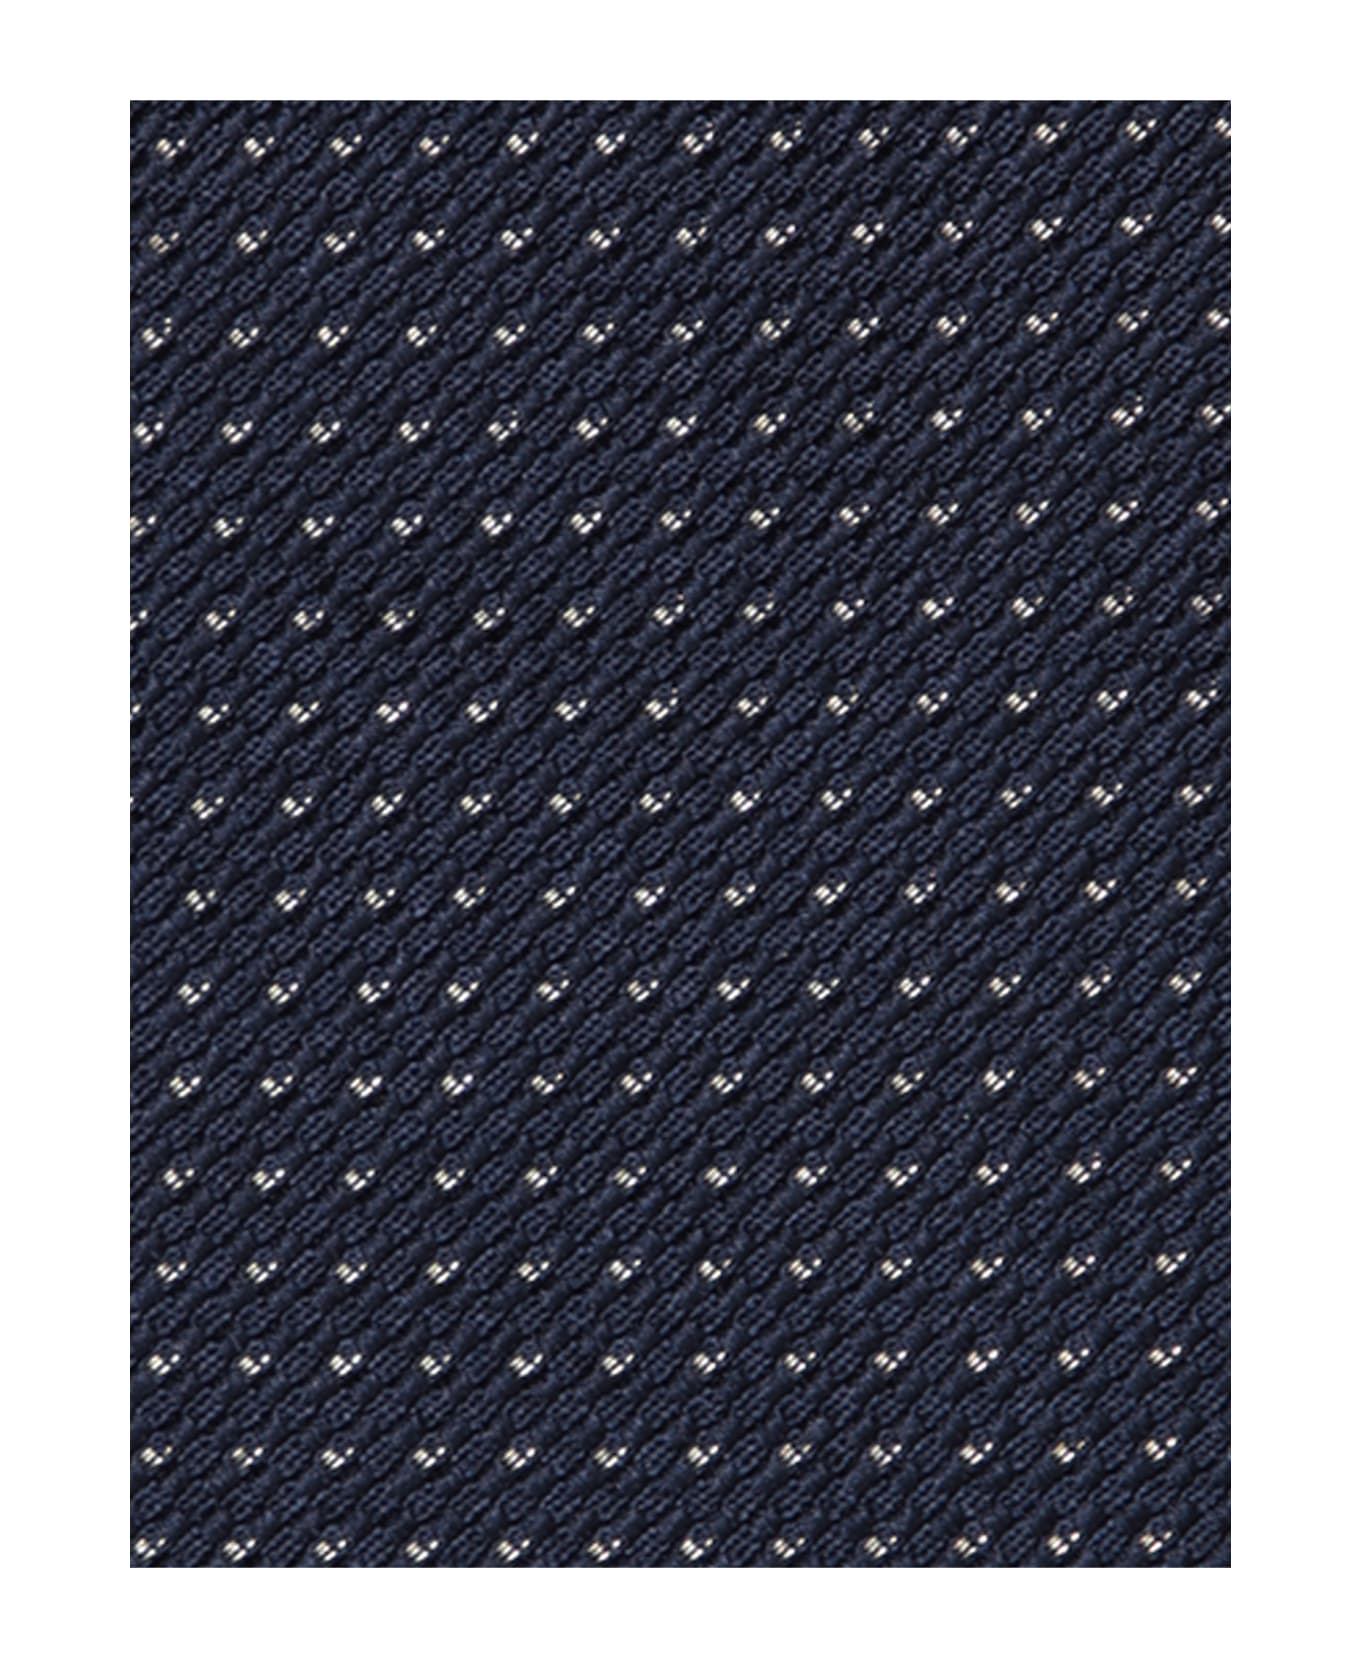 Brioni Micropattern Dark Blue/gold Tie - Blue ネクタイ